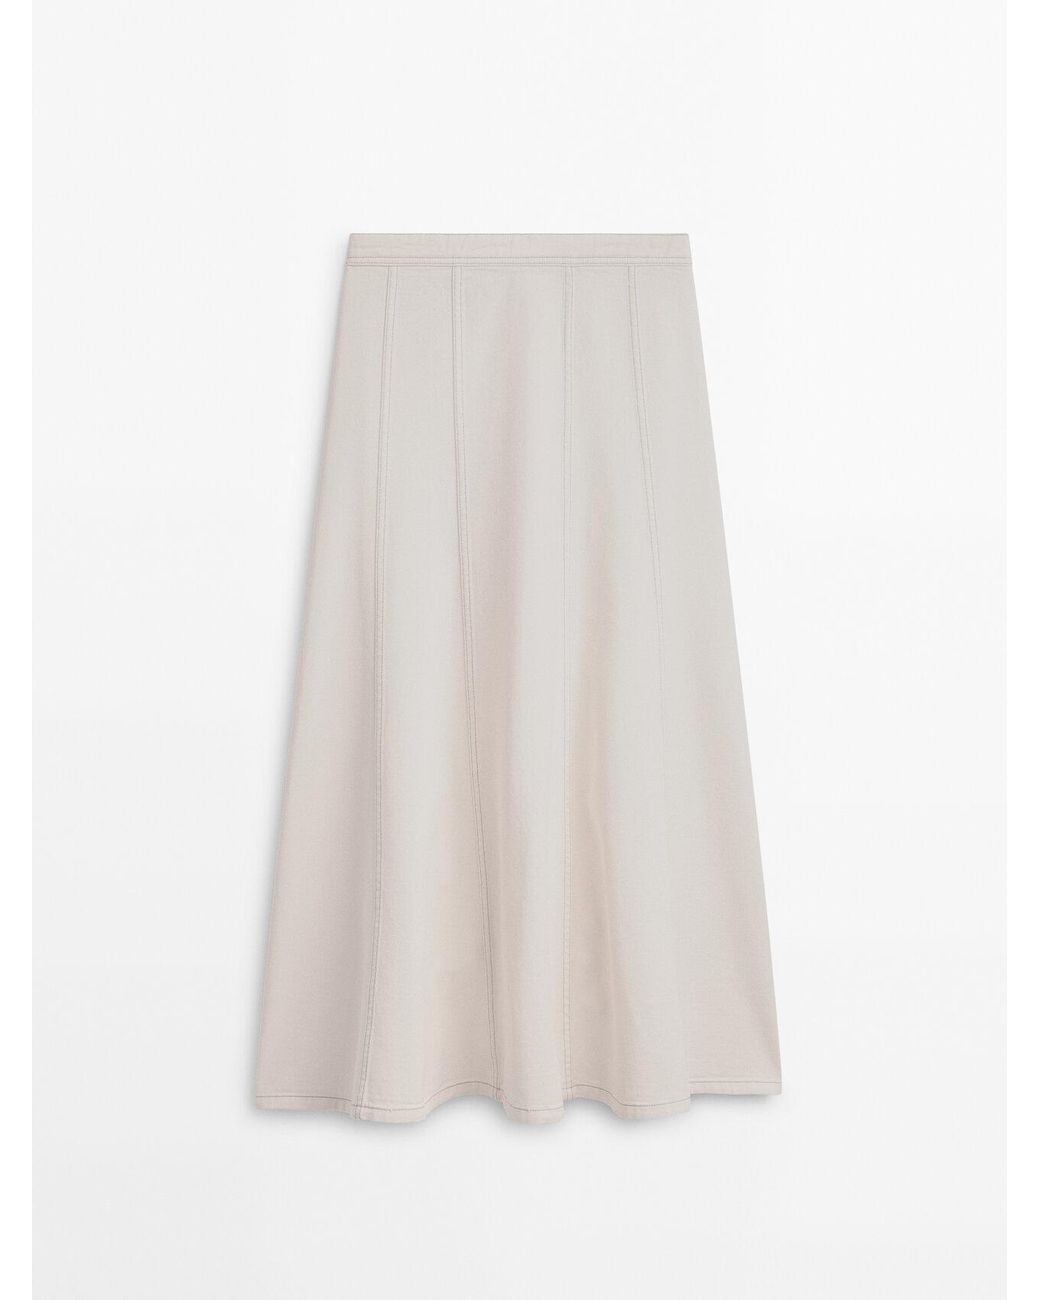 MASSIMO DUTTI High-waist Panelled Denim Skirt in White | Lyst